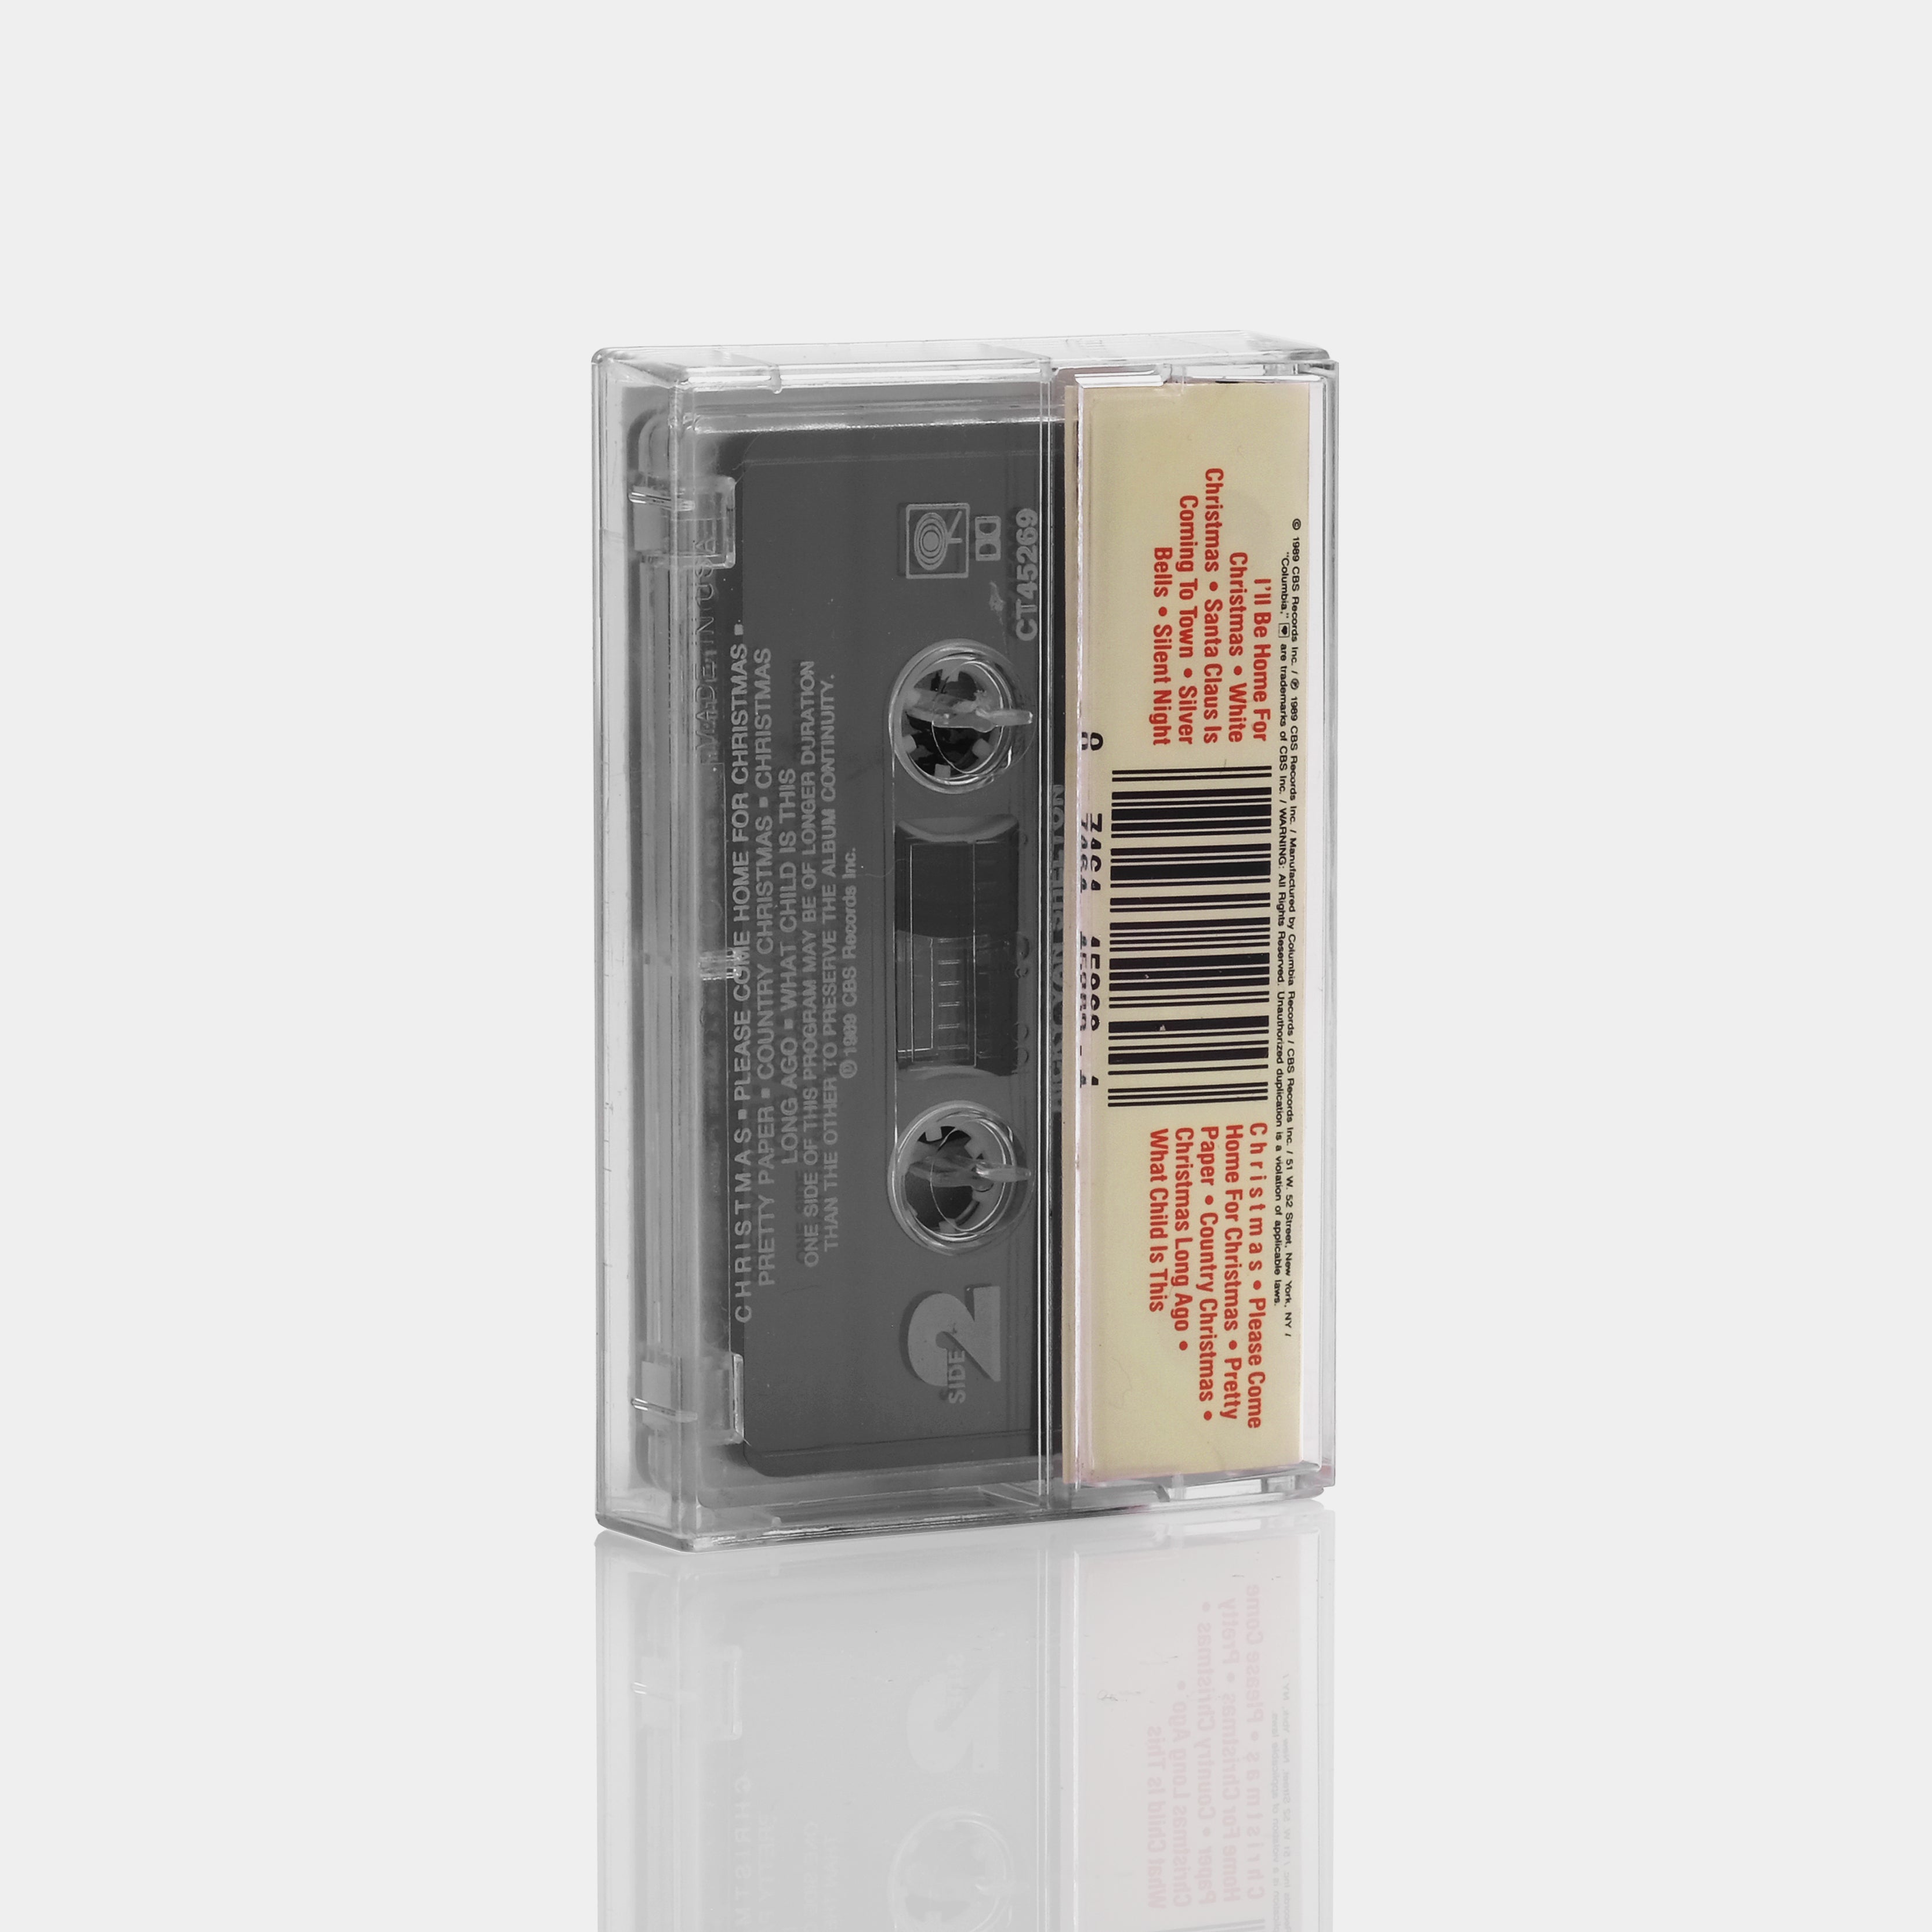 Ricky Van Shelton - Sings Christmas Cassette Tape